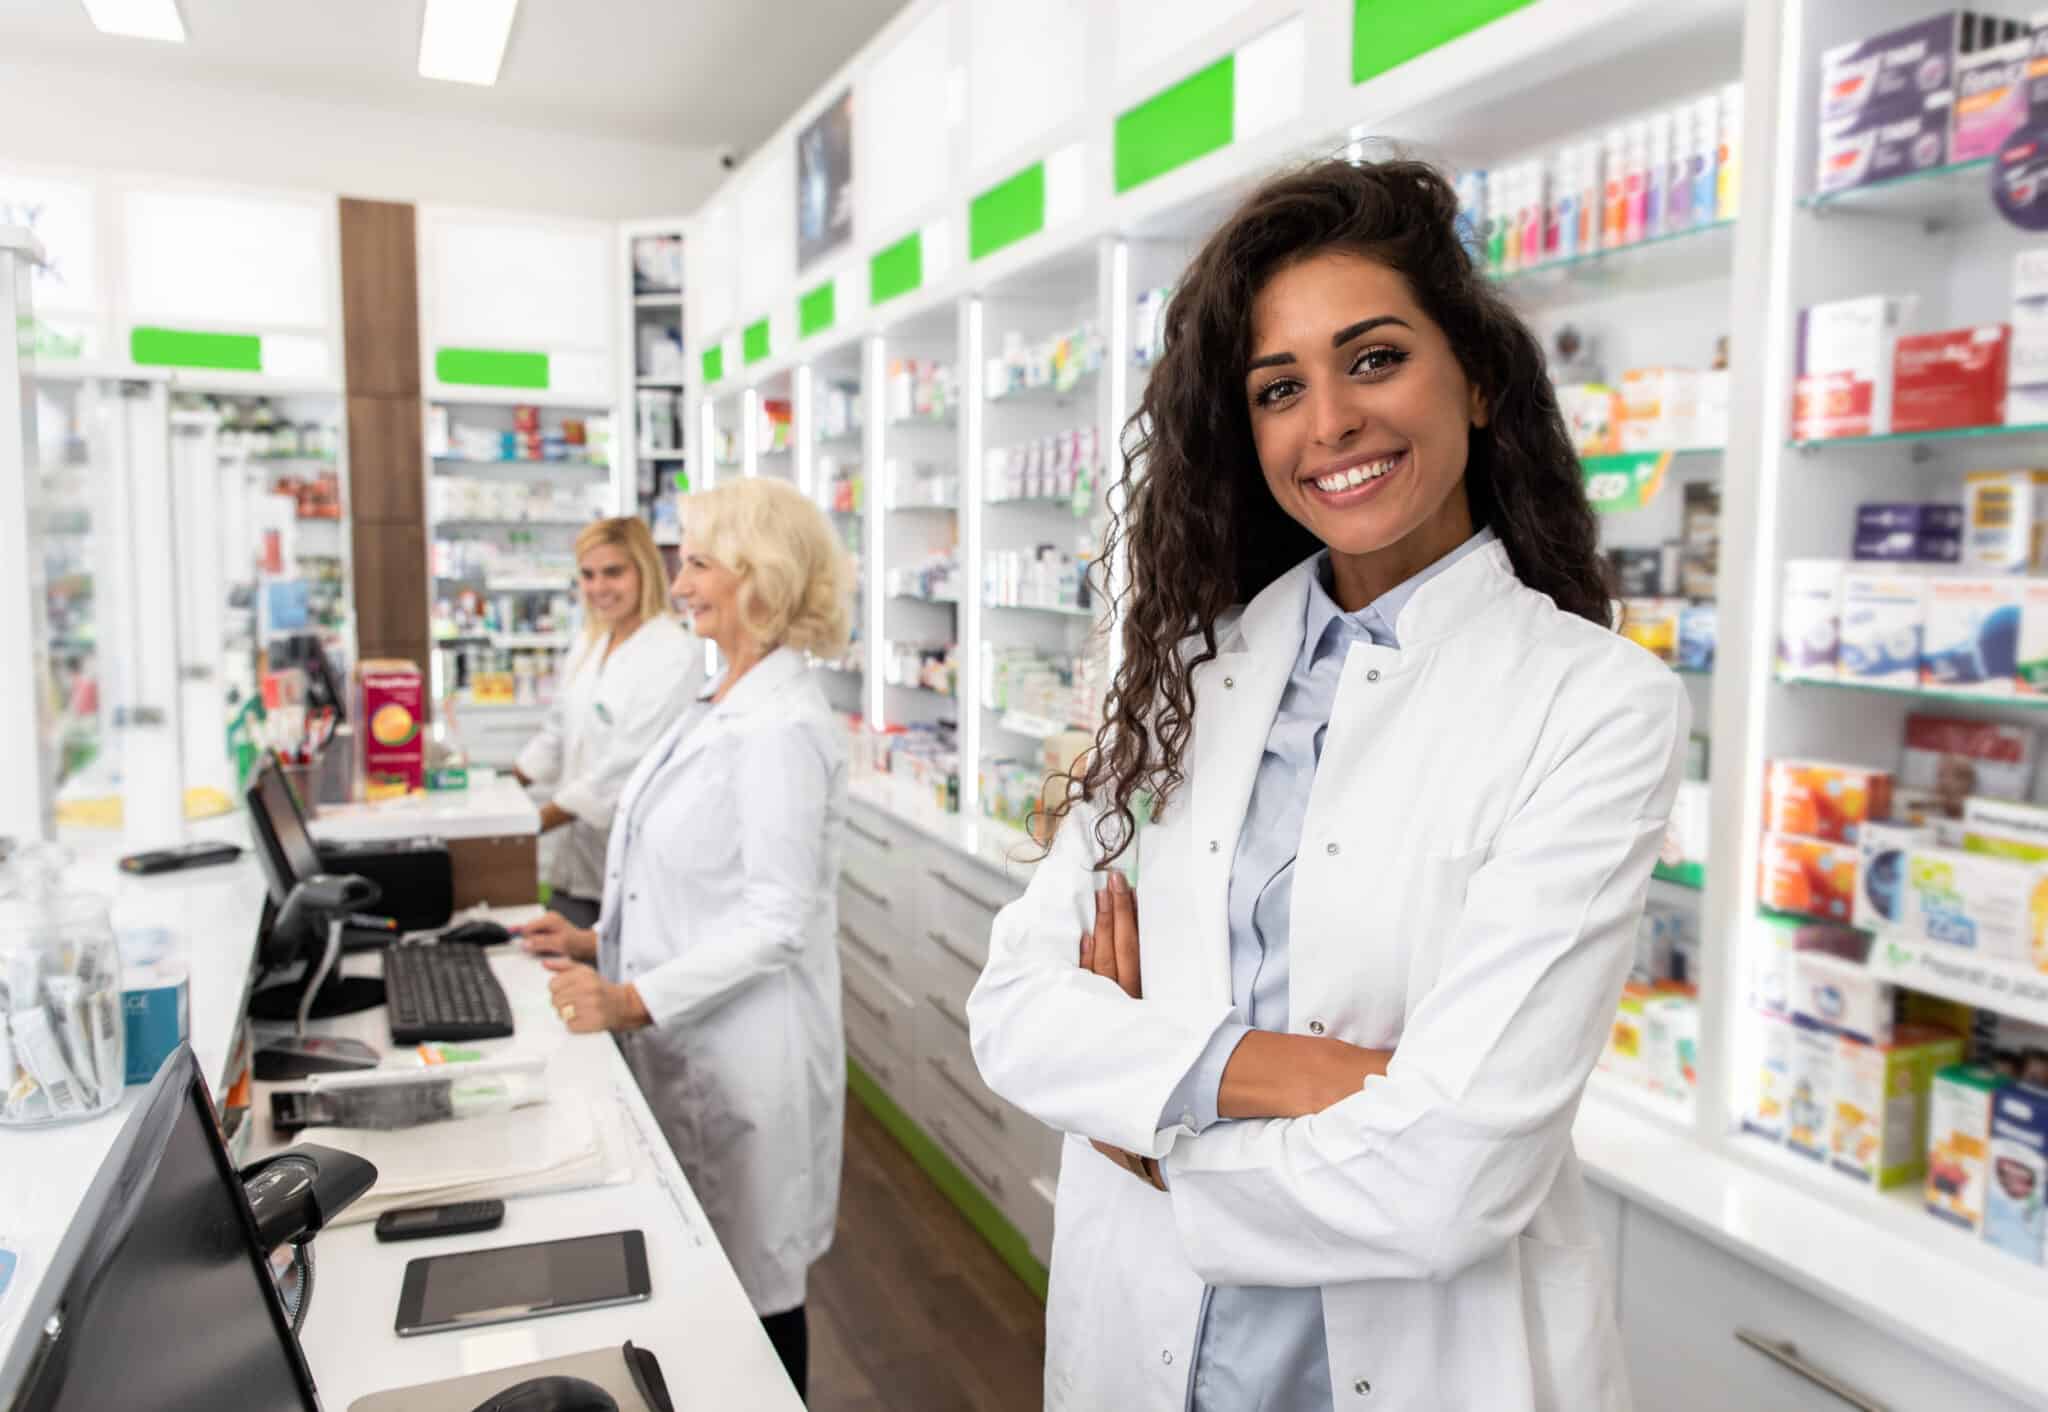 Qualité démarche officine : une nouvelle enquête pour répondre au mieux aux besoins des pharmaciens